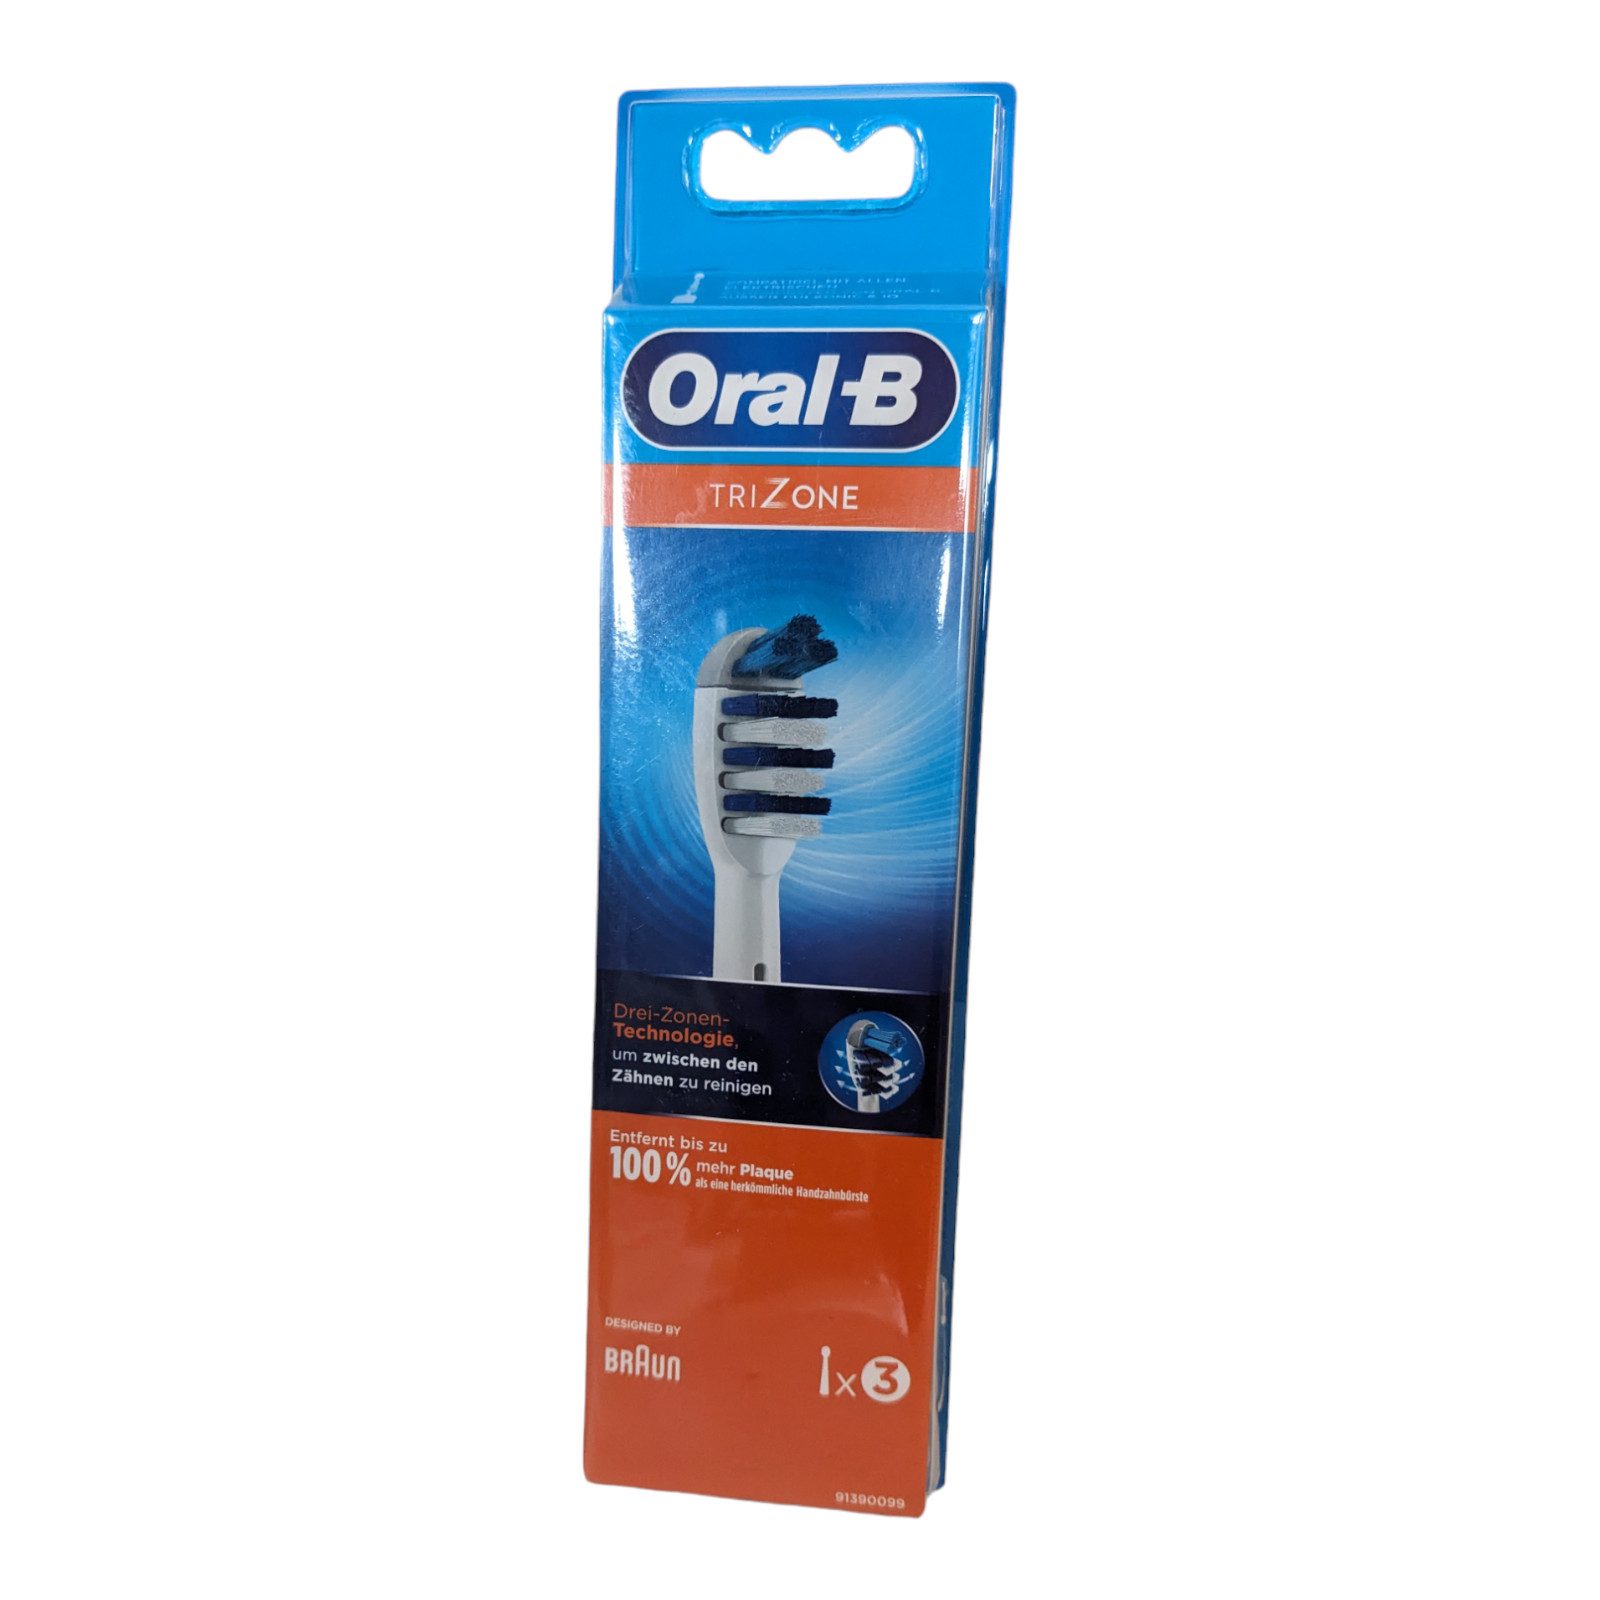 Braun Aufsteckbürsten Oral-B TriZone Aufsteckbürsten für elektrische Zahnbürste, 3 Stück, Im Lieferumfang sind 3 Oral-B Ersatz-Aufsteckbürsten enthalten.